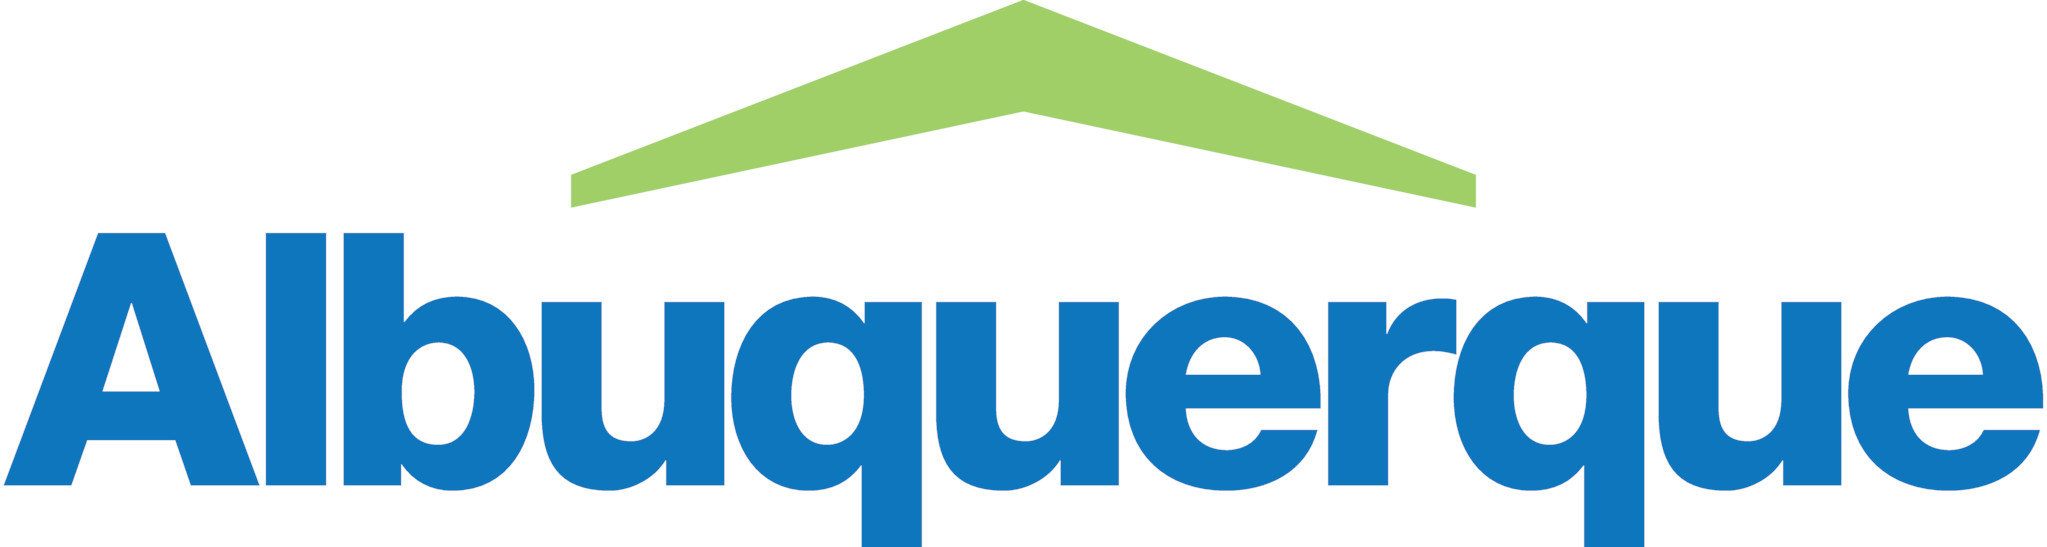 Clayton Albuquerque company logo